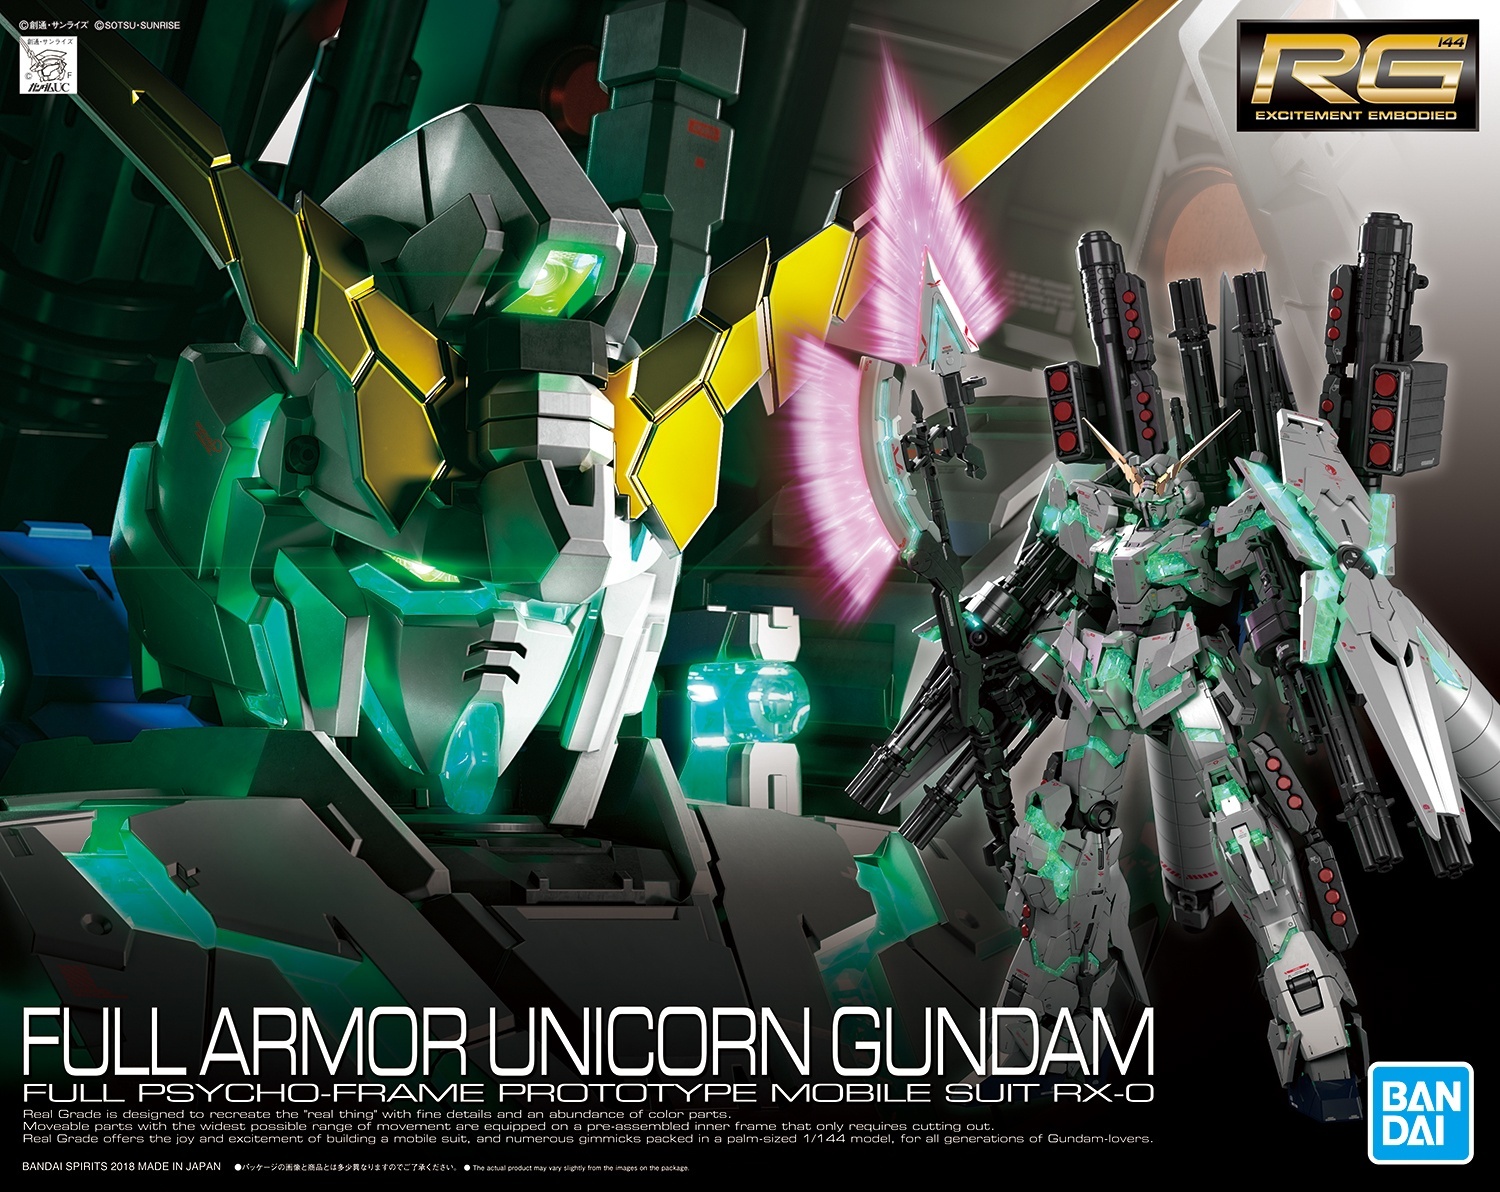 Bandai Gundam RG 1/144 Full Armor Unicorn Gundam Gunpla Model Kit